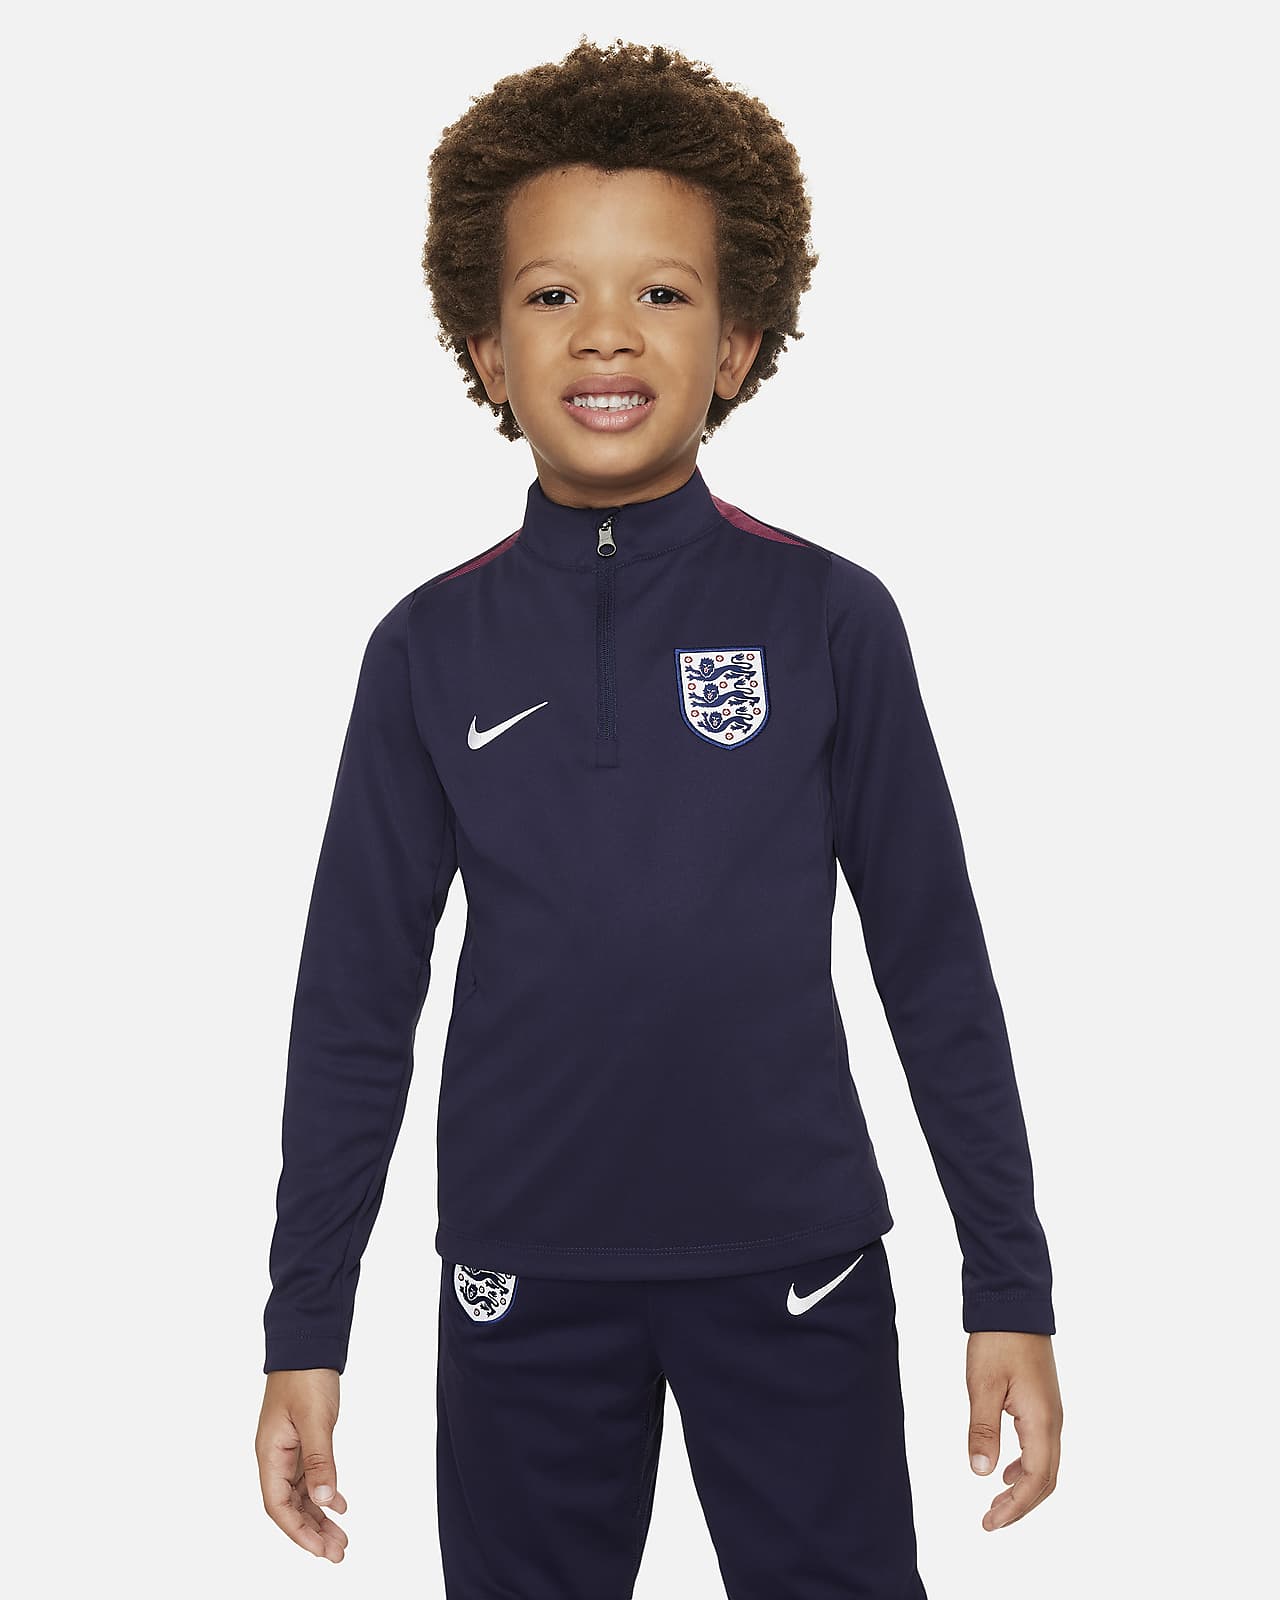 England Academy Pro Nike Dri-FIT fotballtreningsoverdel til små barn